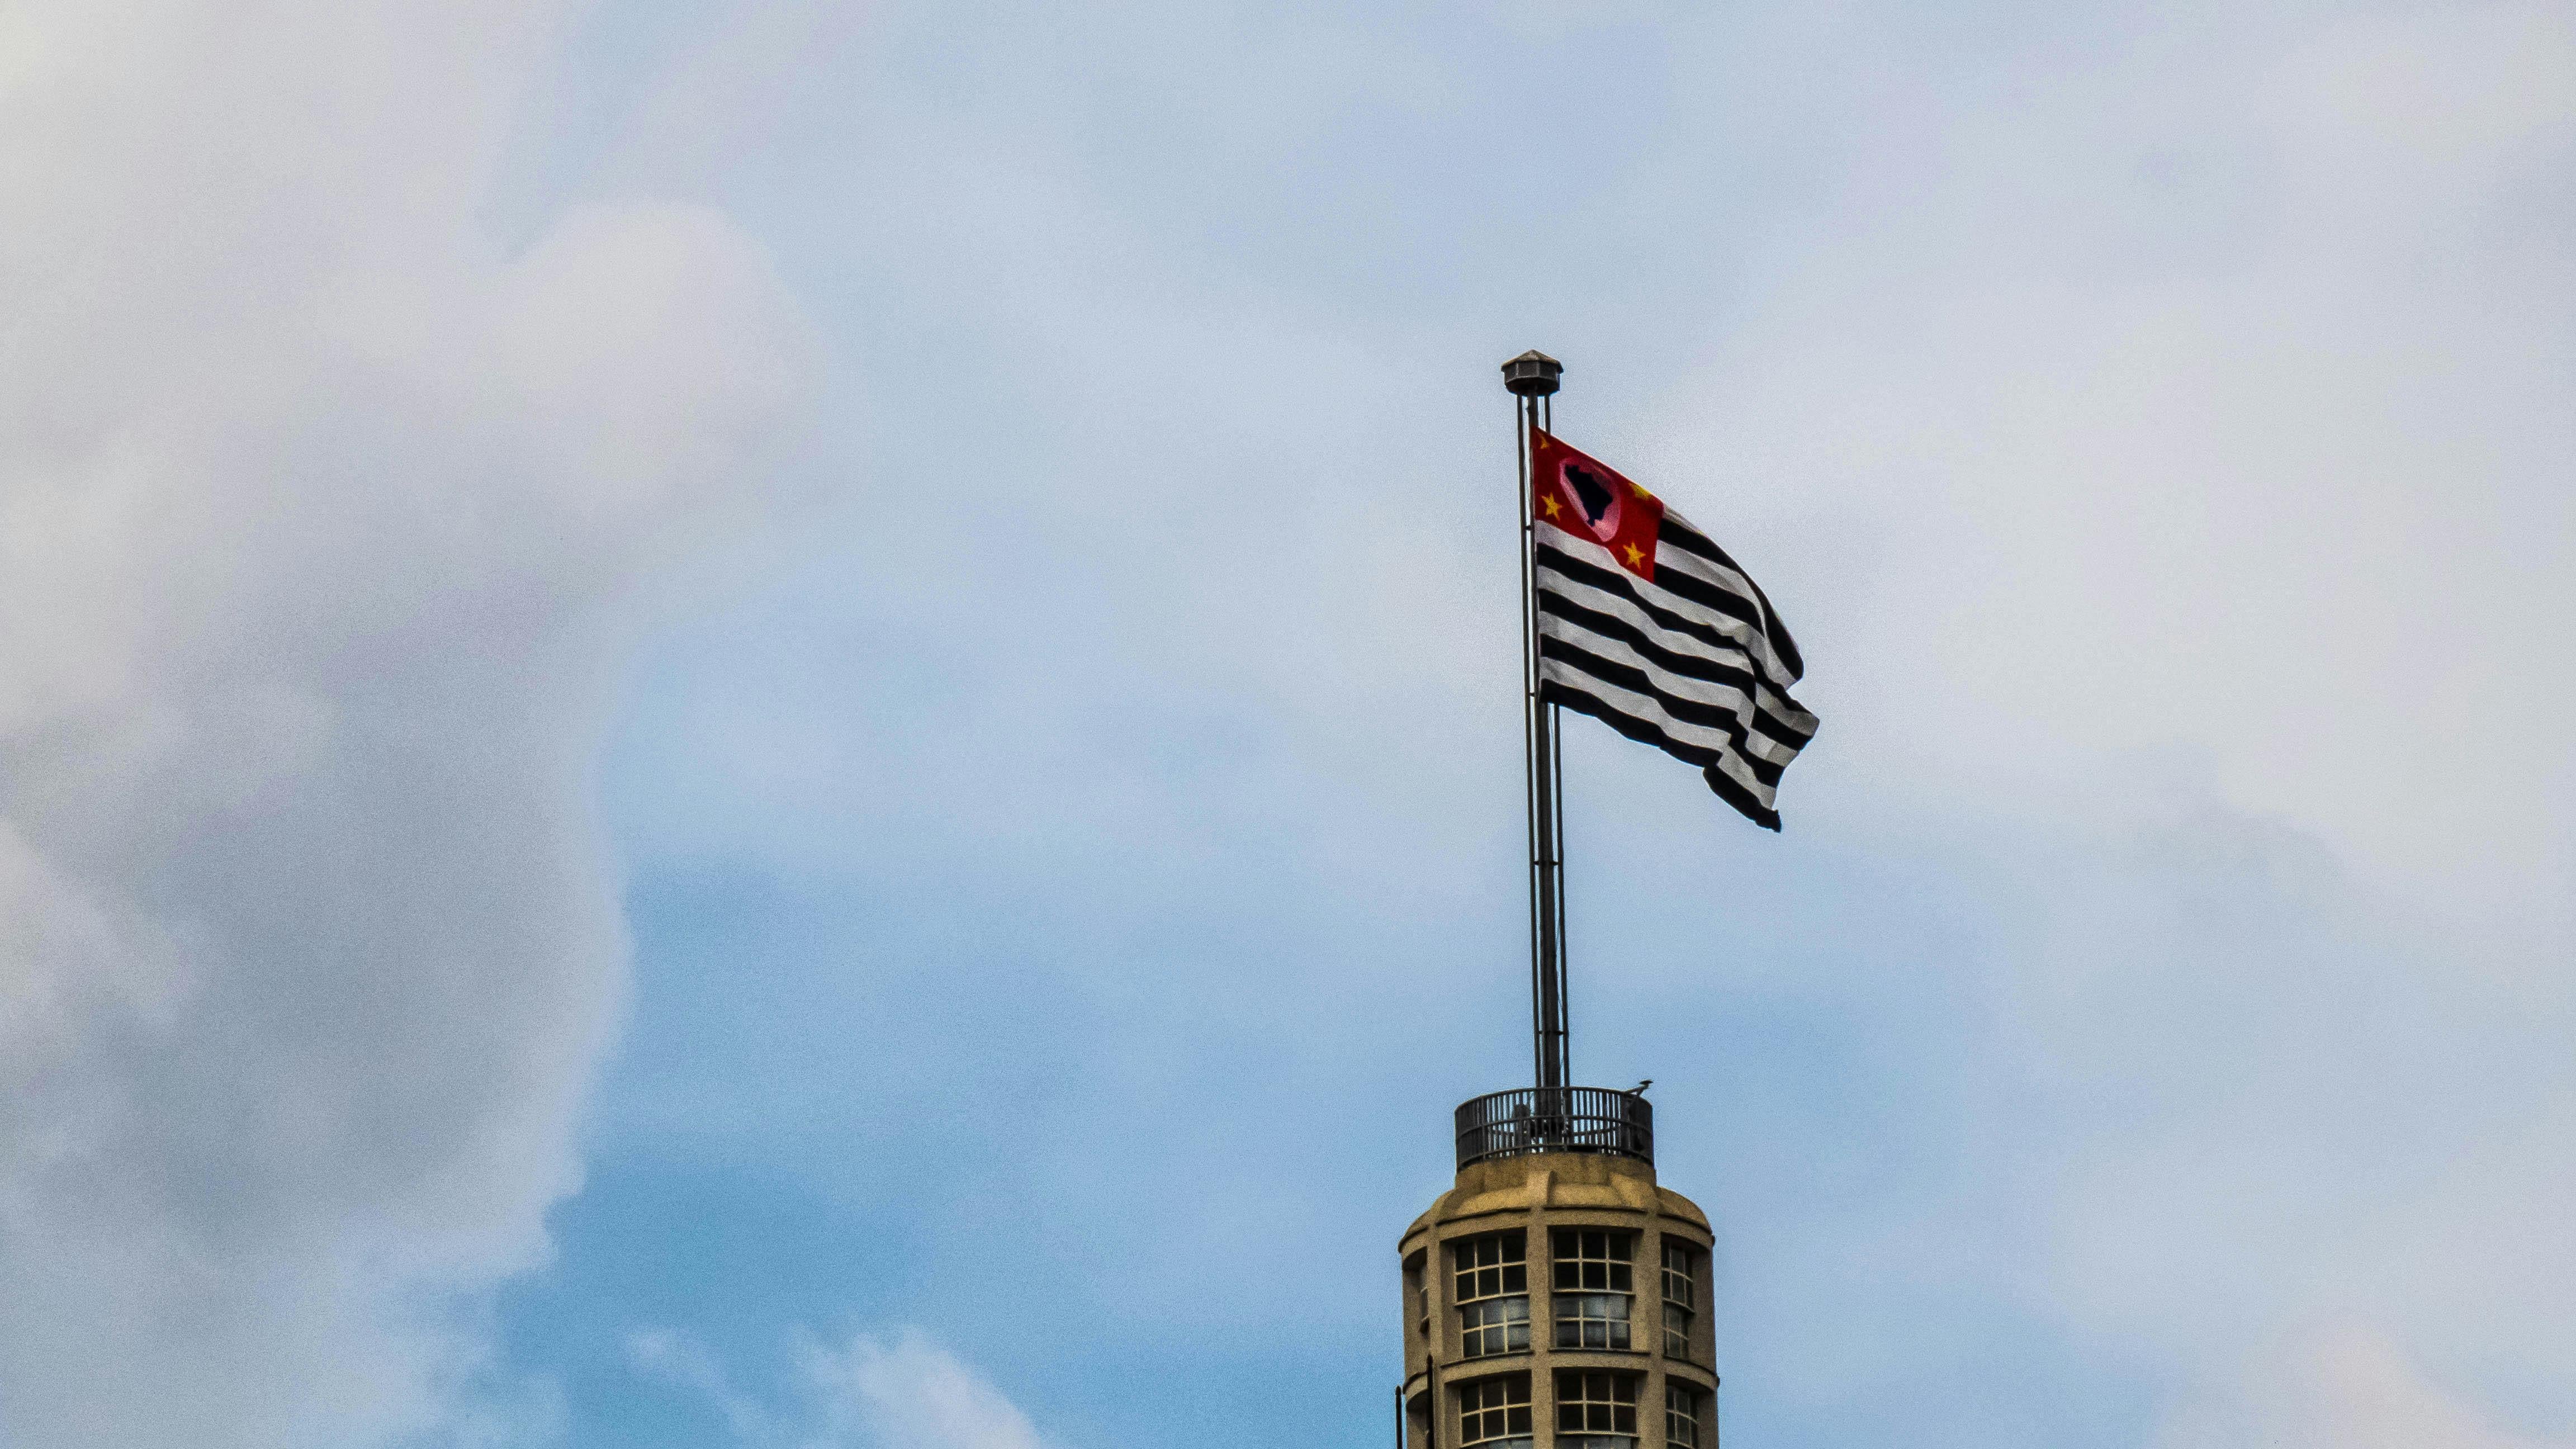 Bandeira do estado de São Paulo